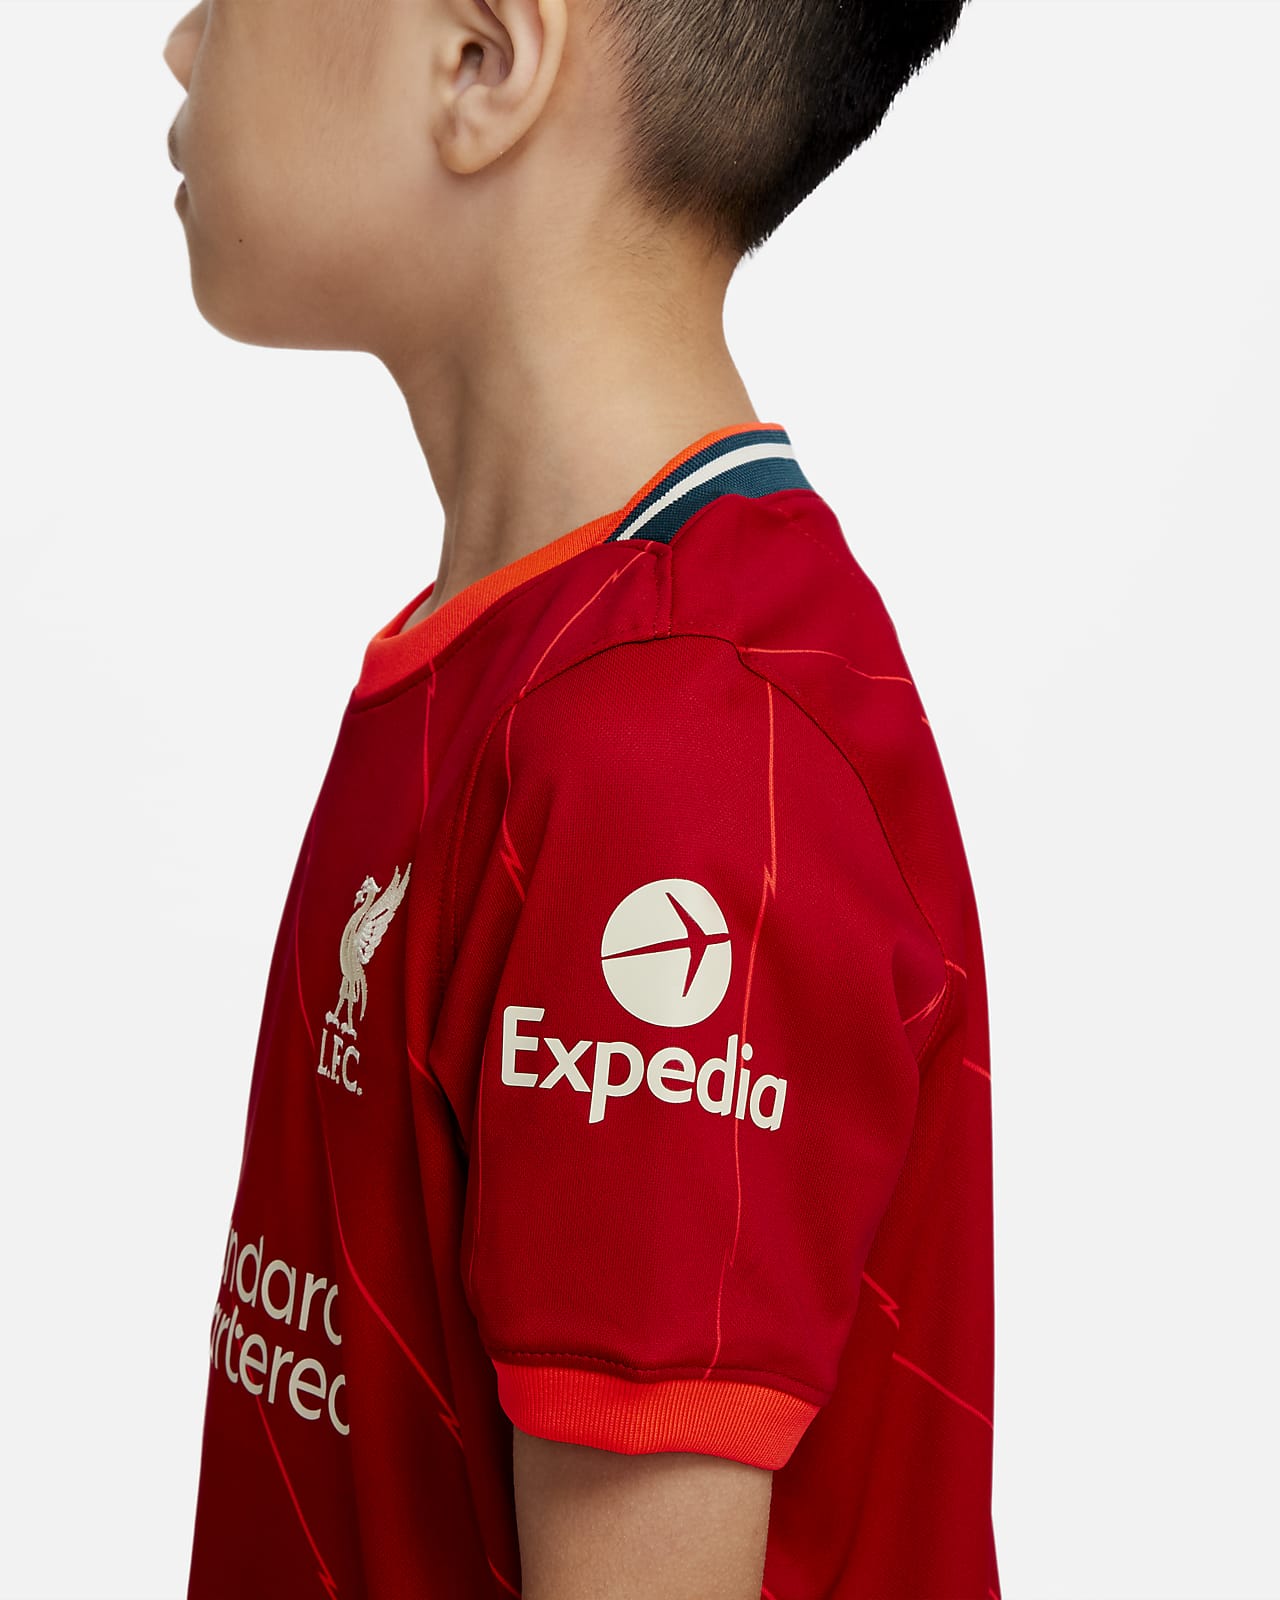 Liverpool FC 2021/22 Home Little Kids' Soccer Kit.